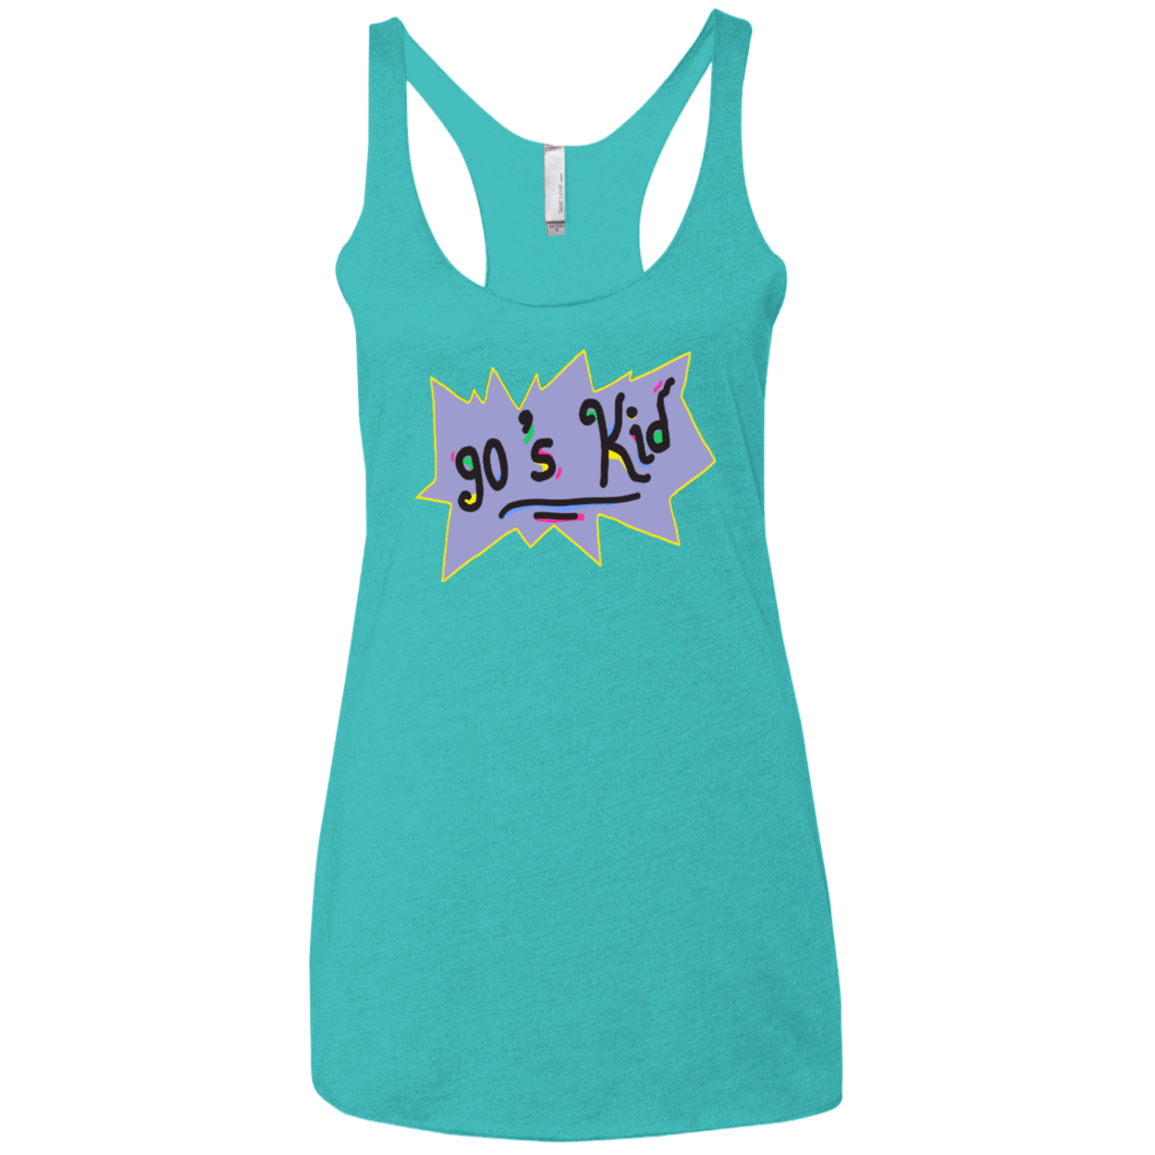 T-Shirts Tahiti Blue / X-Small 90's Kid Women's Triblend Racerback Tank